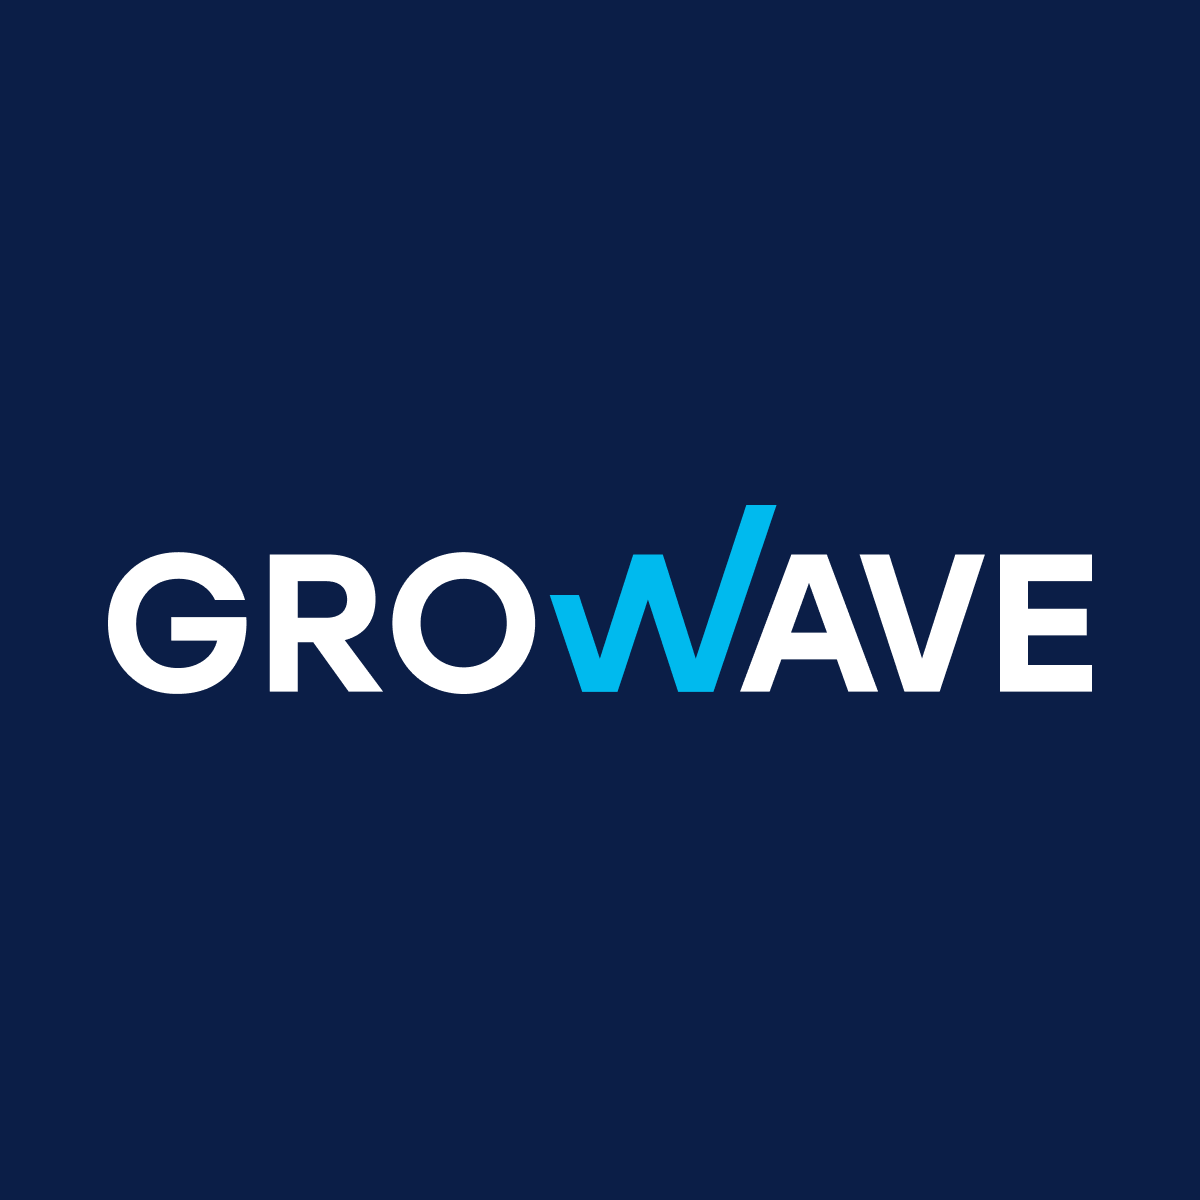 Growave app logo